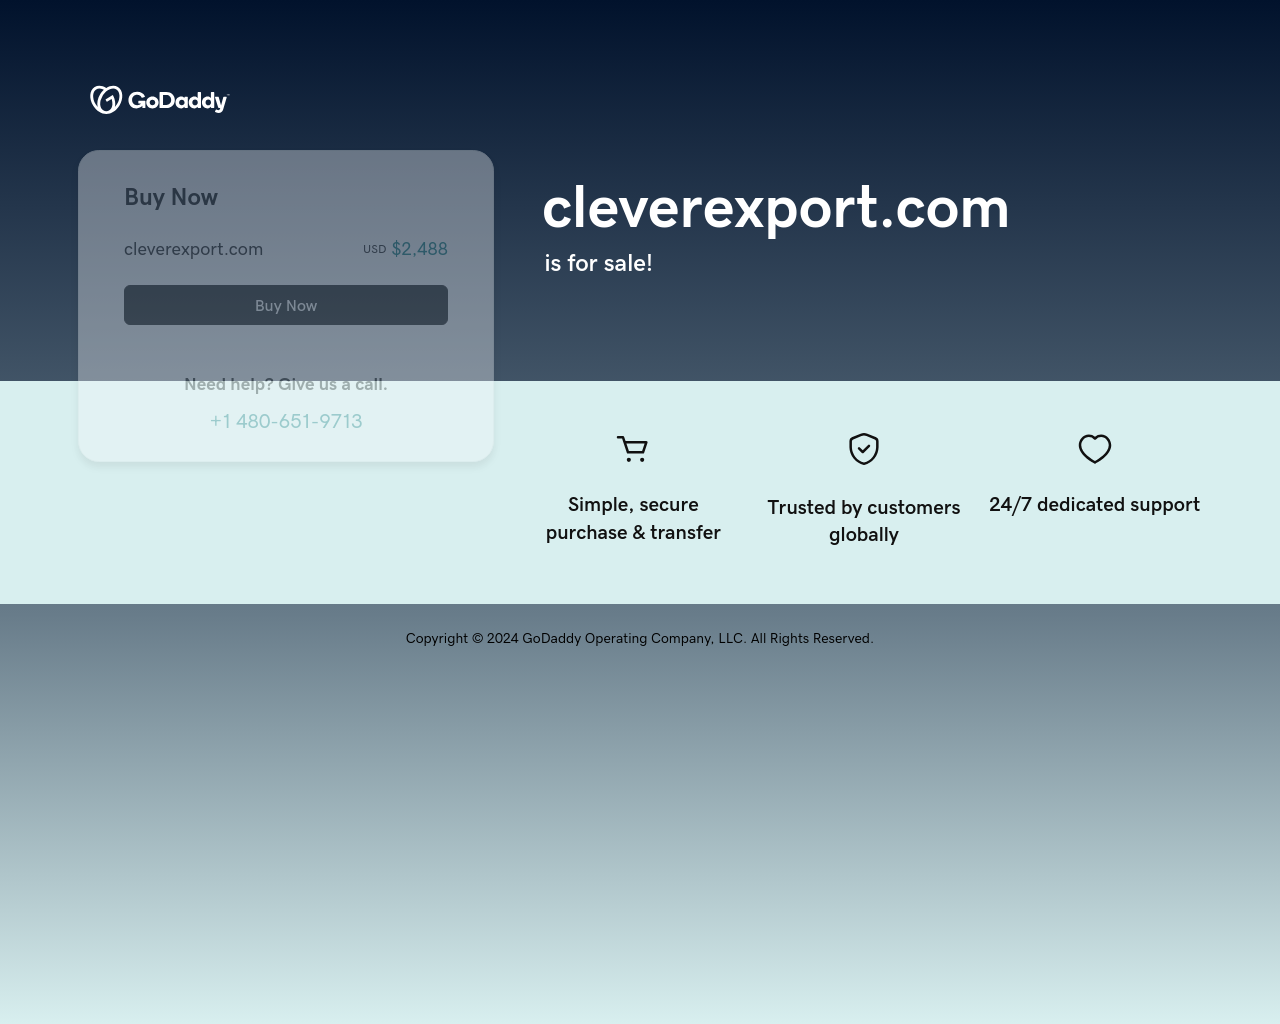 cleverexport.com